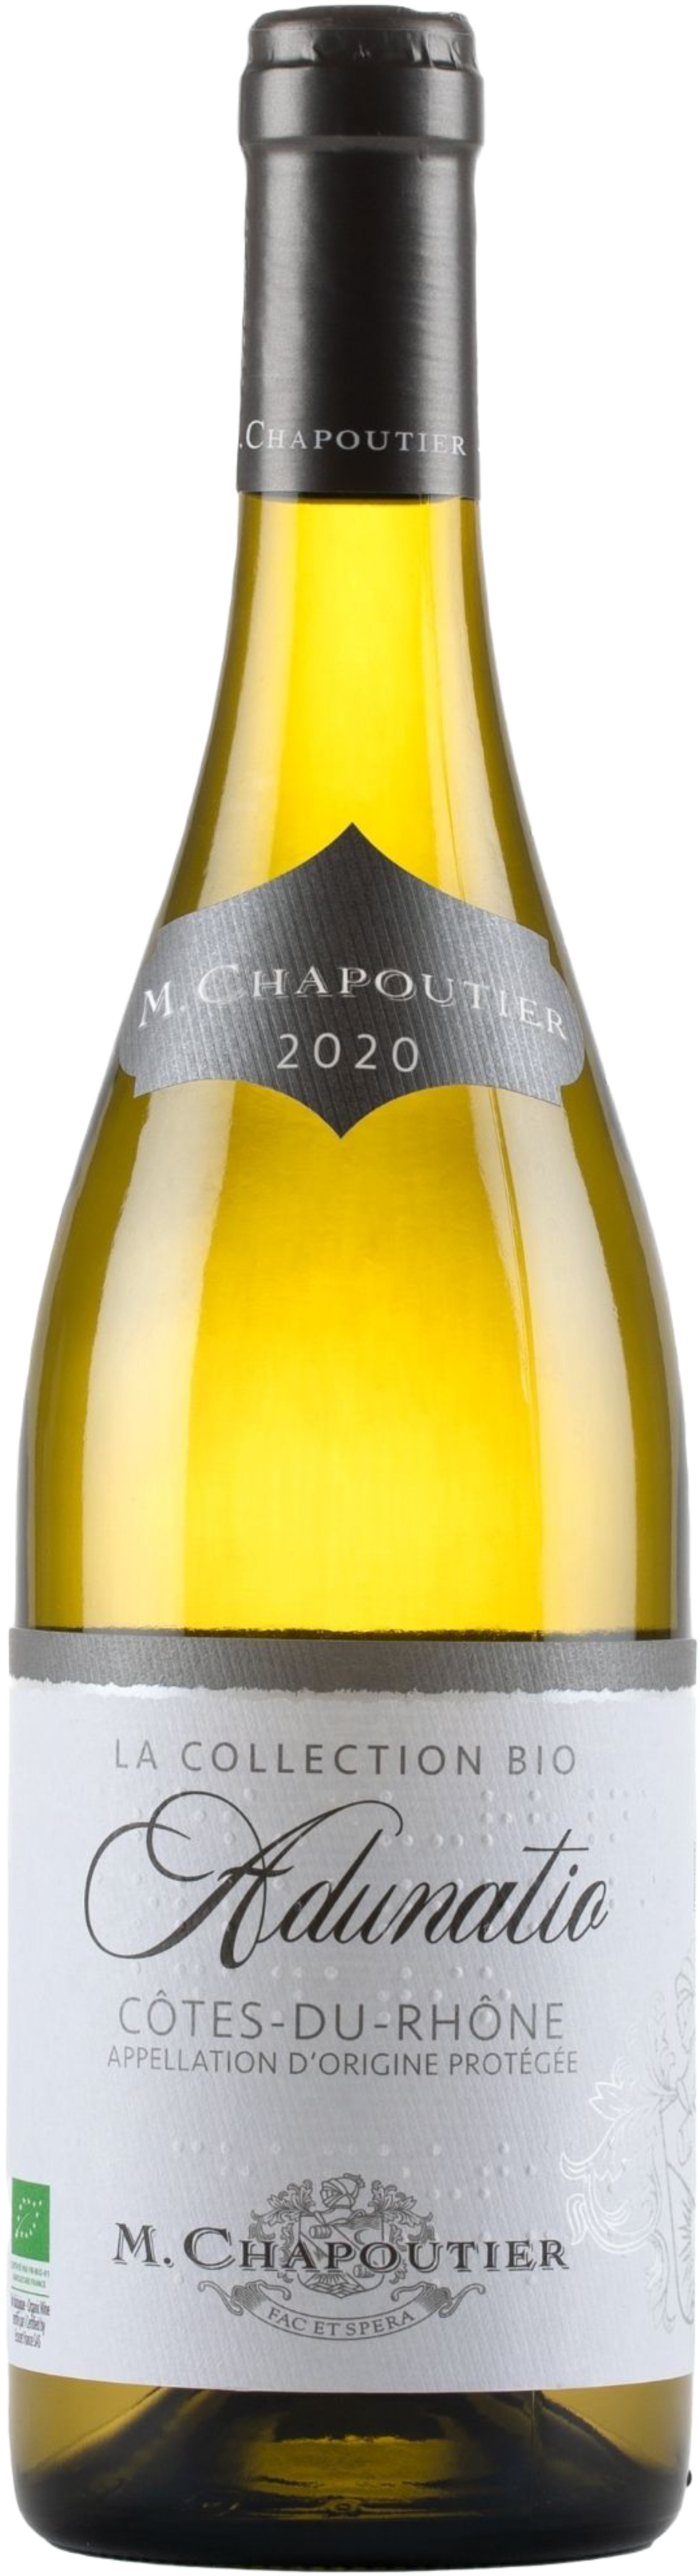 M. Chapoutier - Côtes-du-Rhône Adunatio blanc (2021)